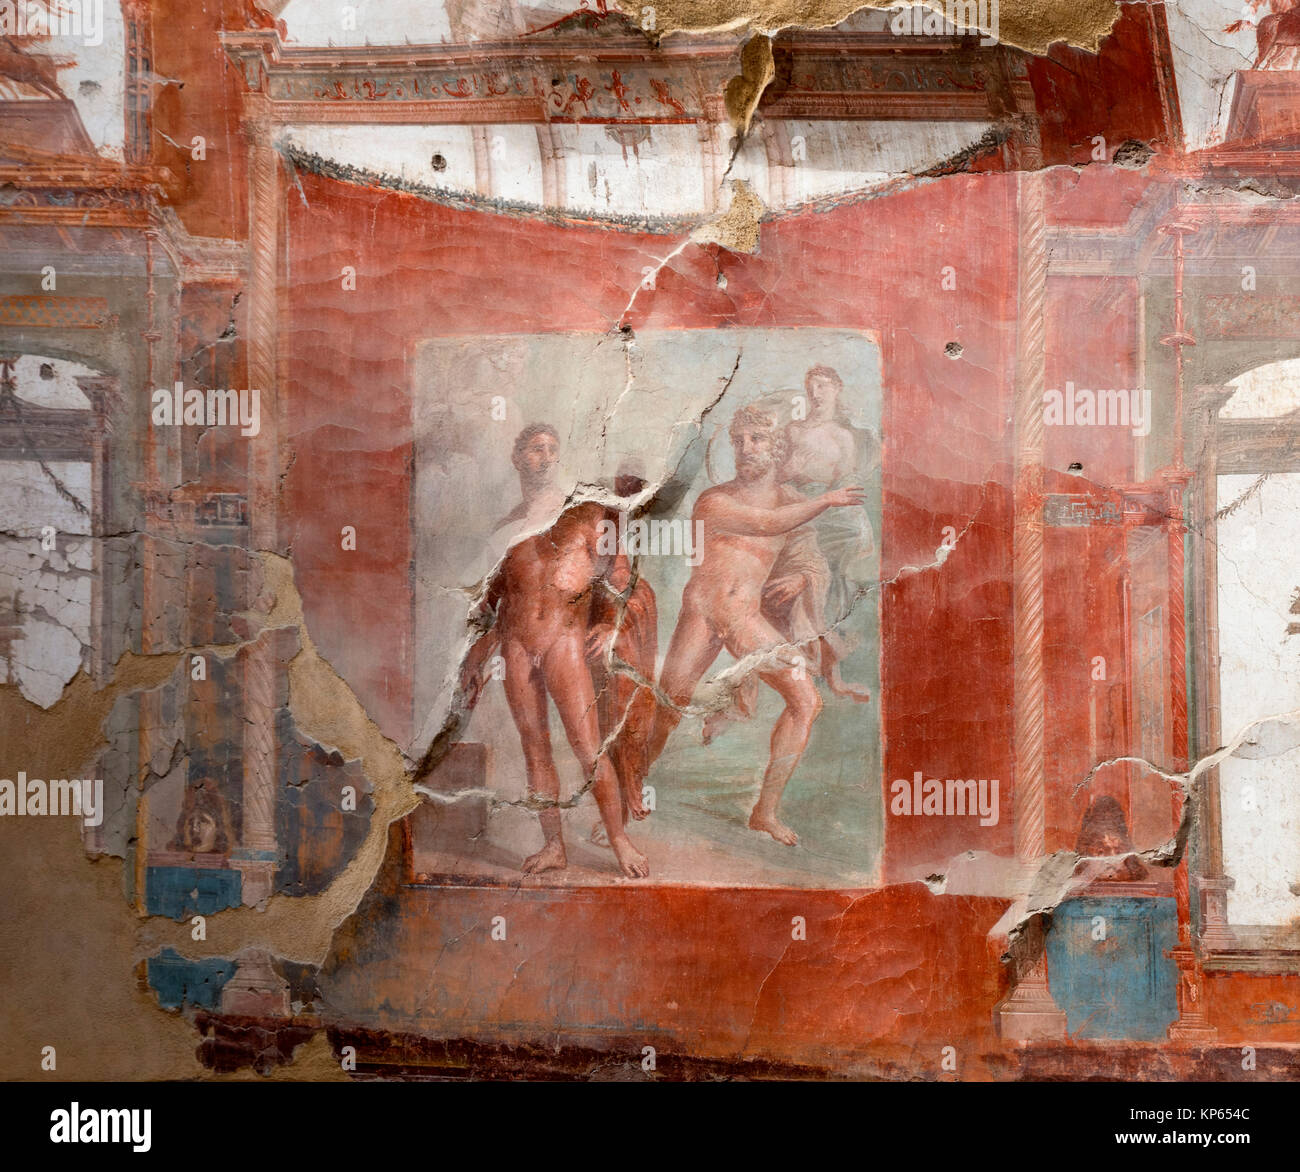 Peinture murale représentant le concours entre Hercule et la rivière Achelous pour la main de Deianira, Collège de l'Augustales, Herculanum, Italie Banque D'Images